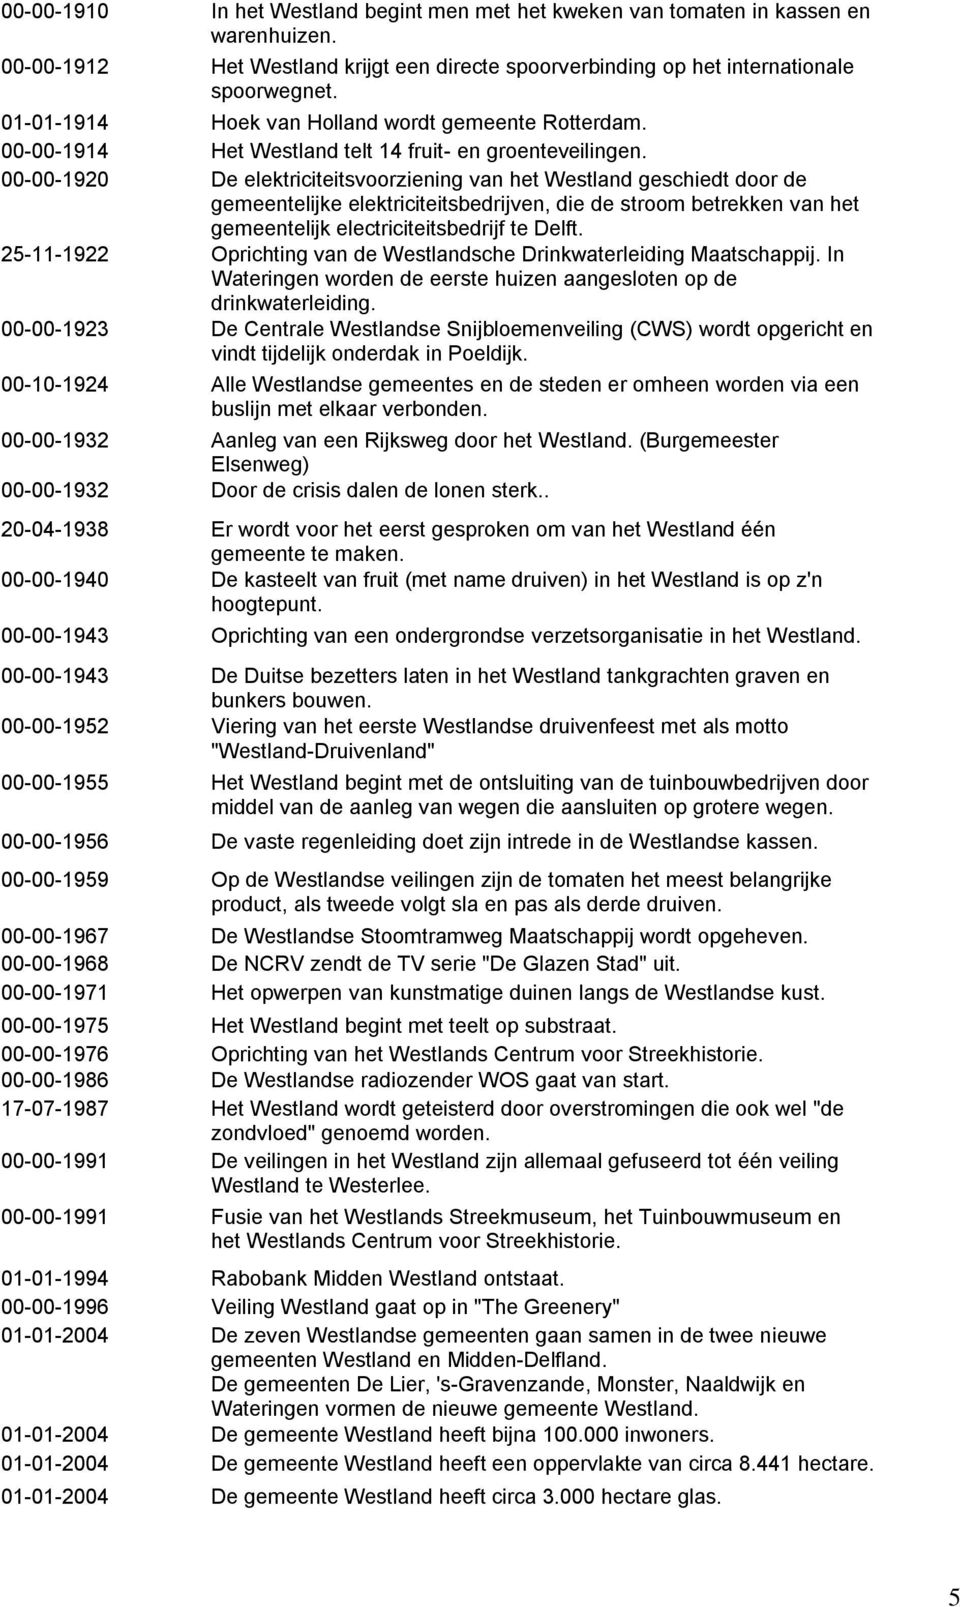 00-00-1920 De elektriciteitsvoorziening van het Westland geschiedt door de gemeentelijke elektriciteitsbedrijven, die de stroom betrekken van het gemeentelijk electriciteitsbedrijf te Delft.